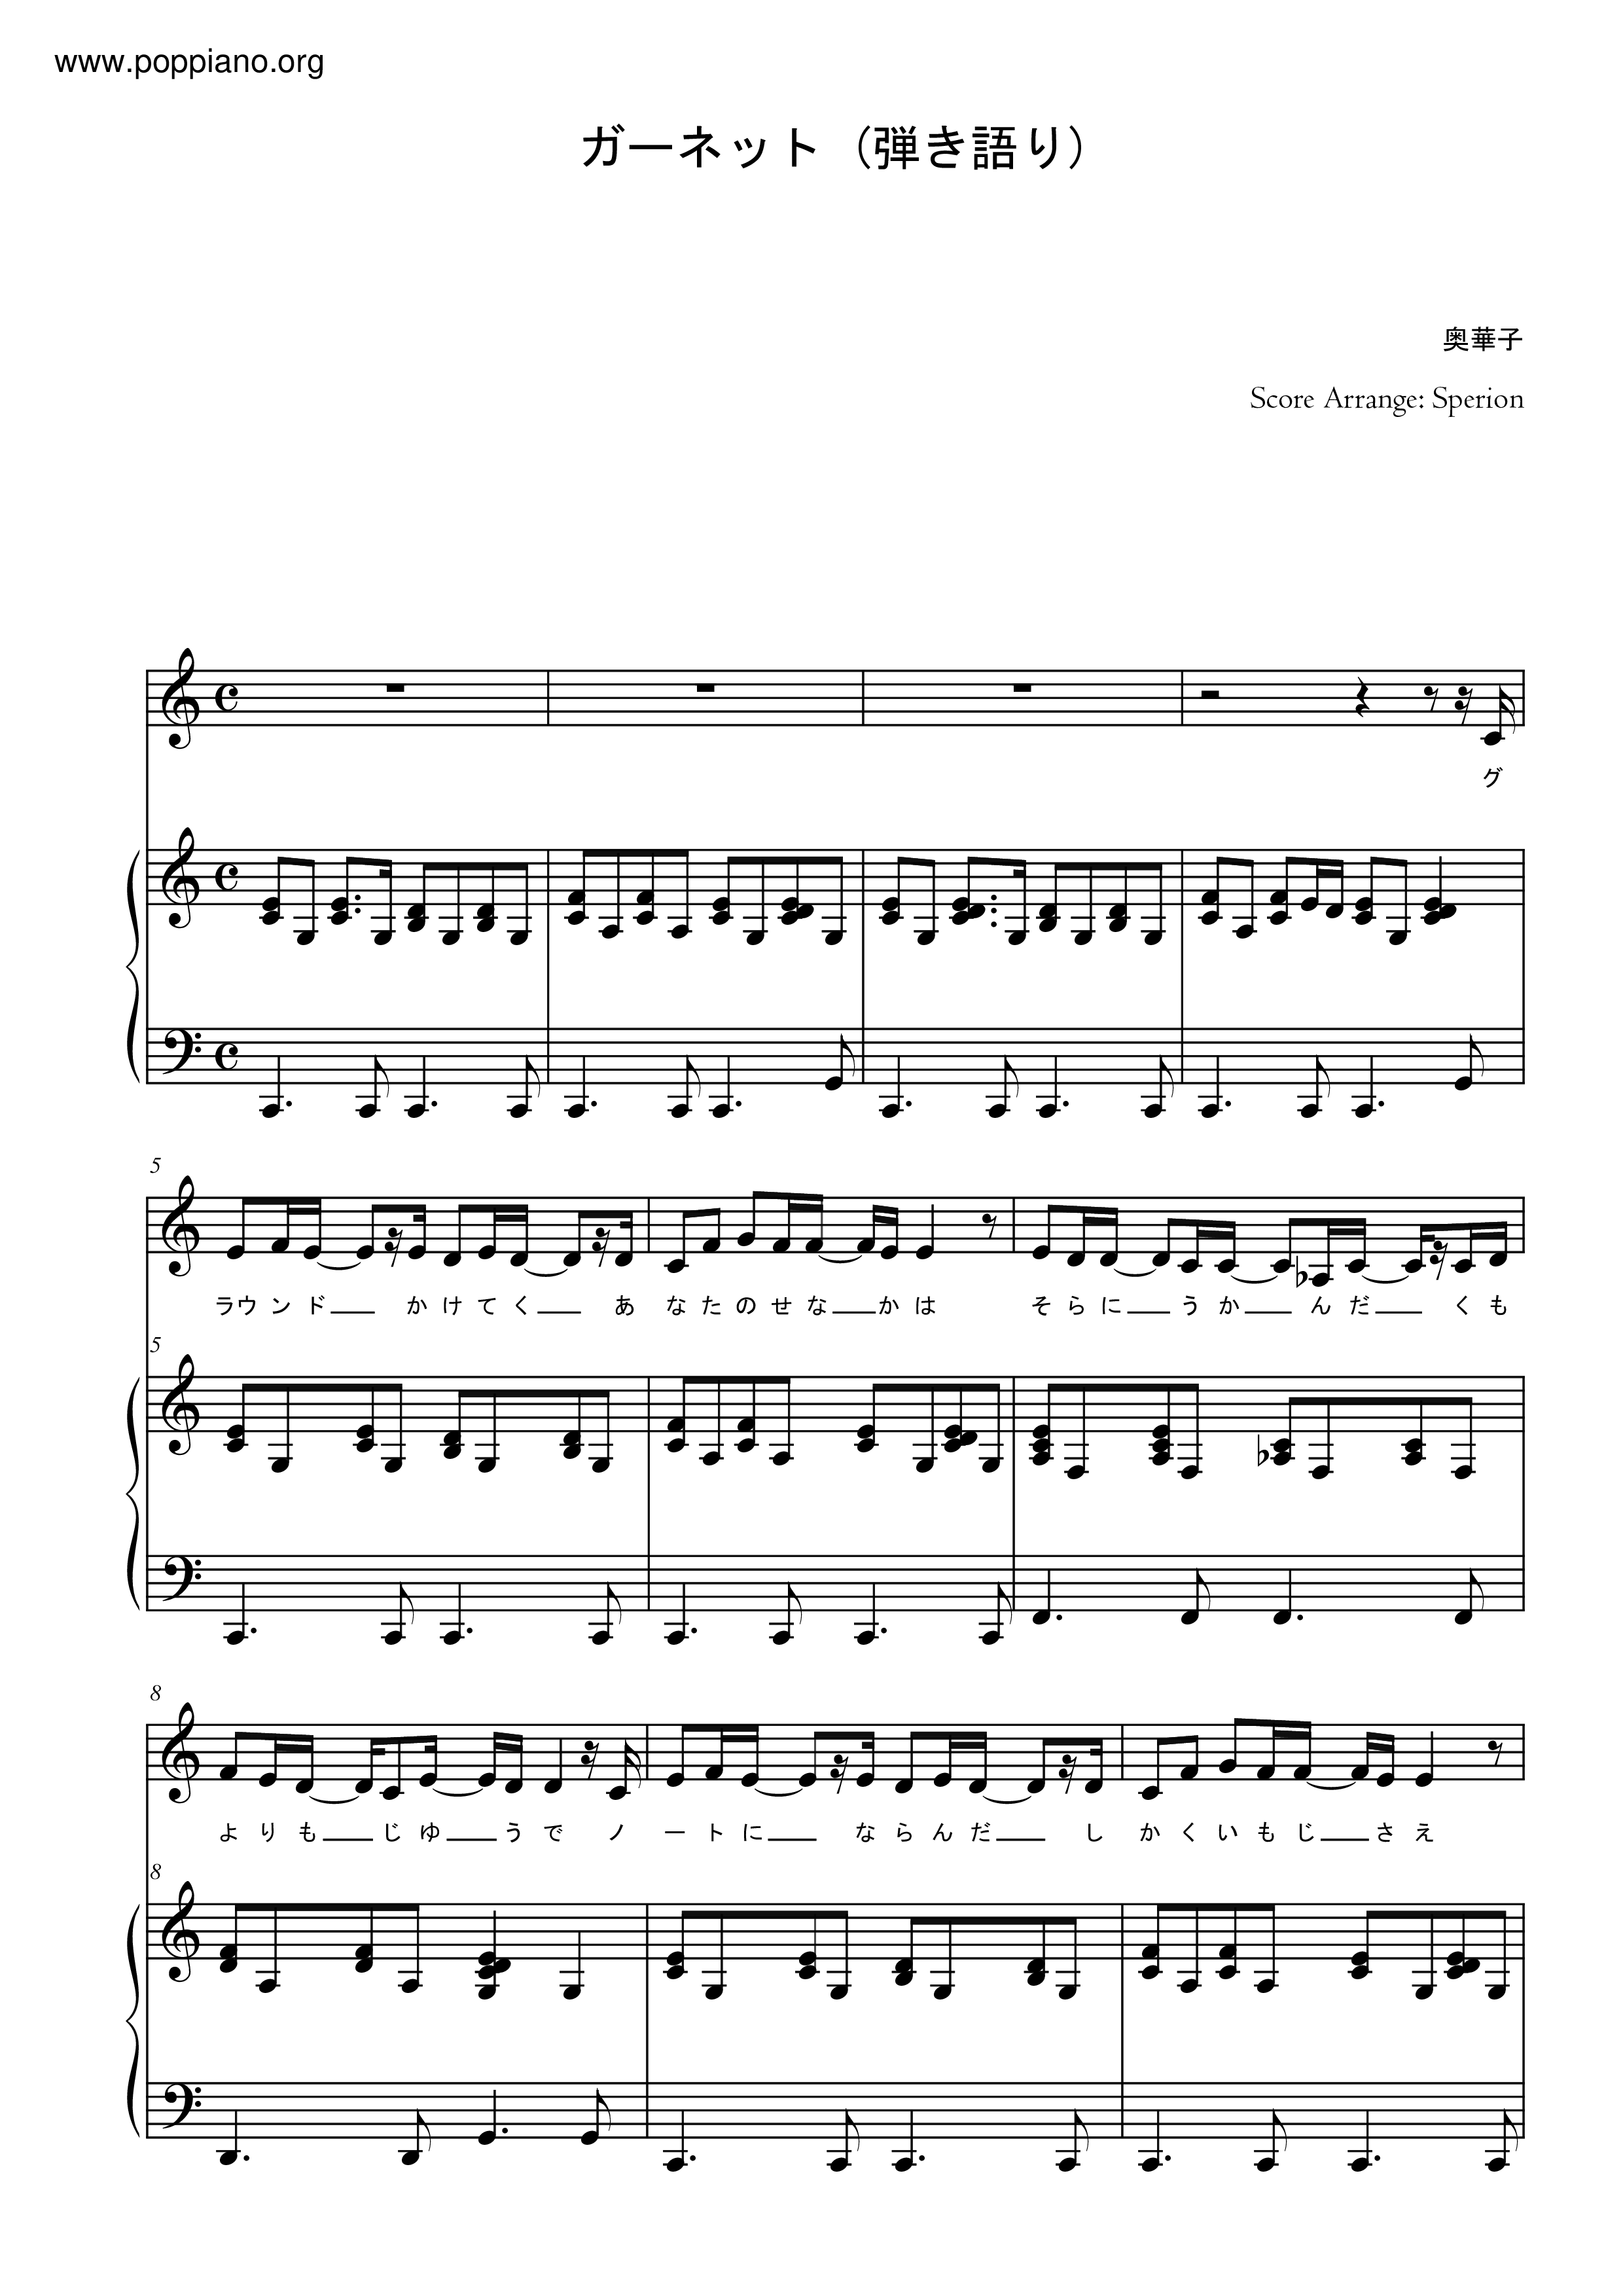 奧華子 ガーネット琴譜 五線譜pdf 奥華子 香港流行鋼琴協會琴譜下載